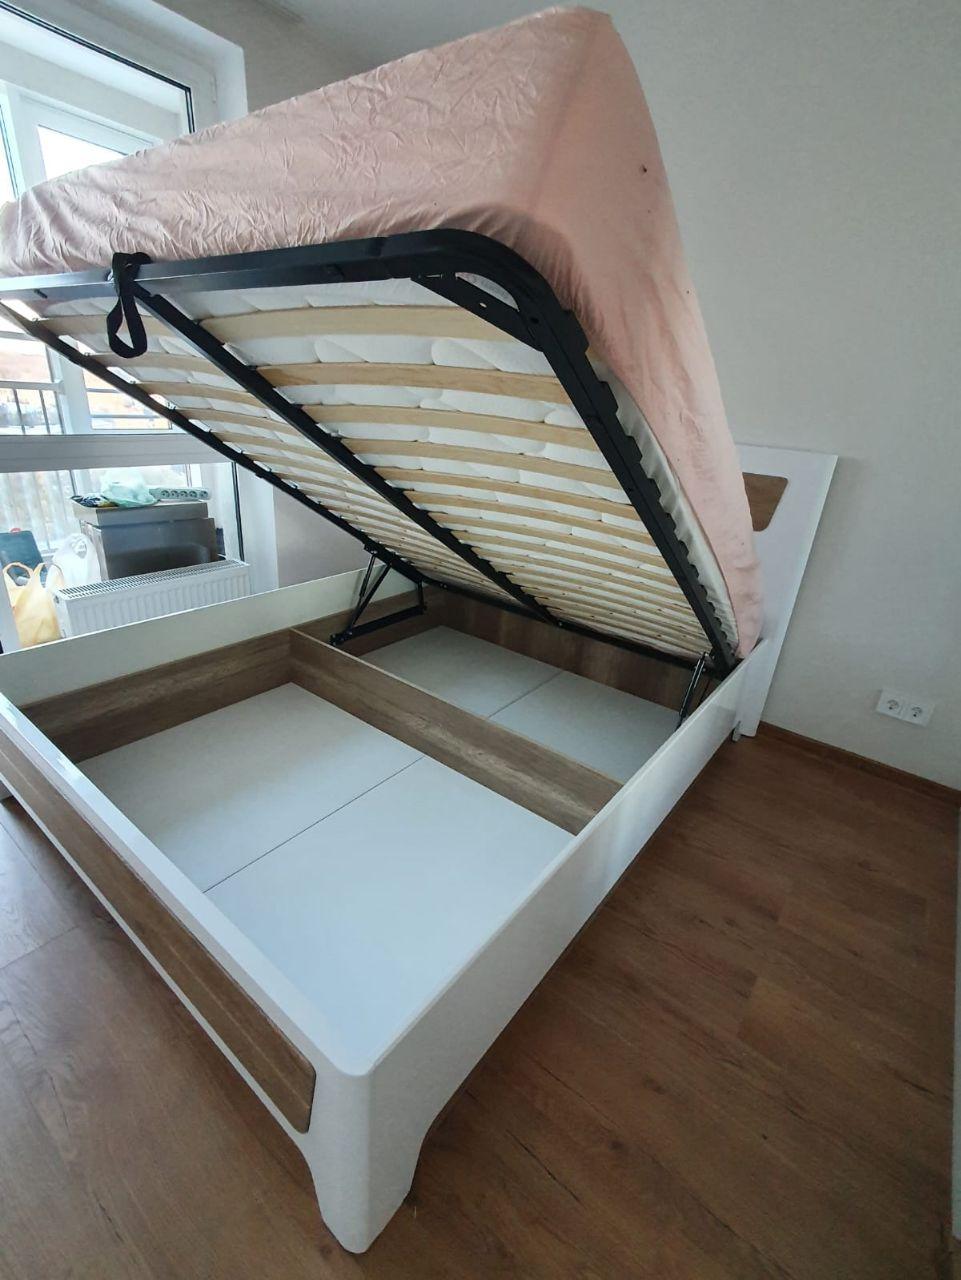 Полутораспальная кровать "Бланка" 120 х 200 с подъемным механизмом